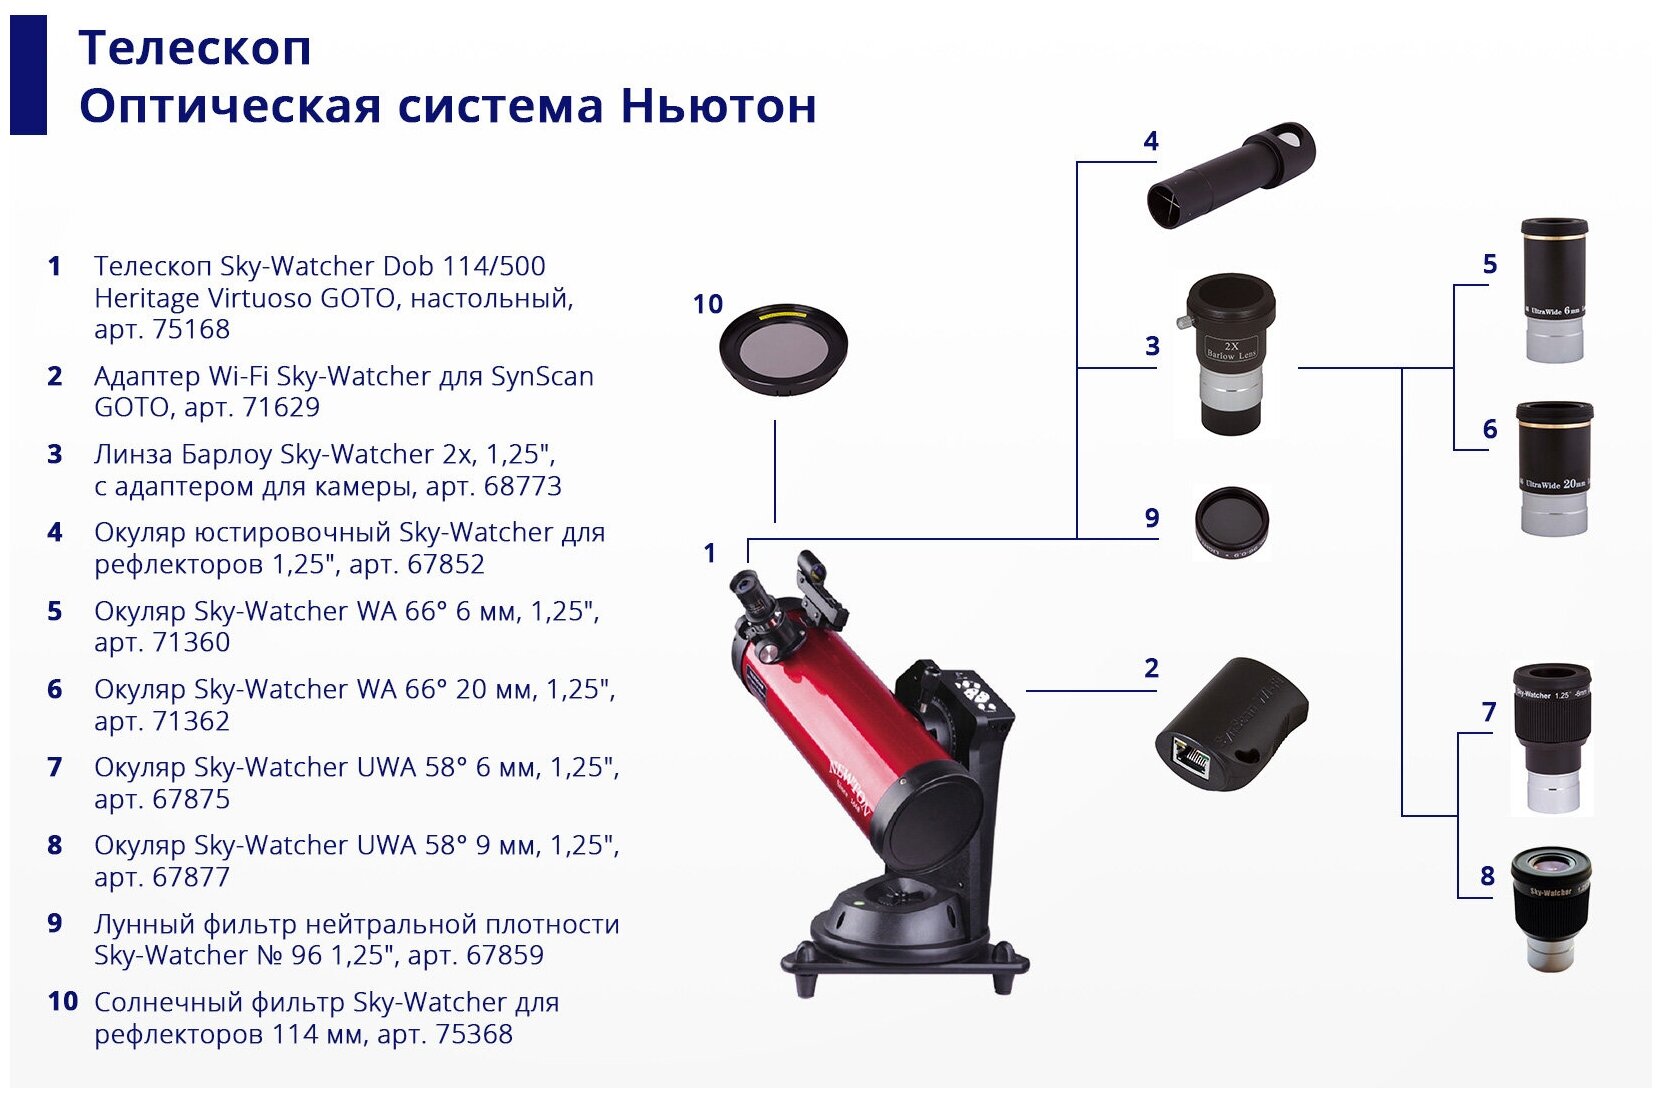 Sky-Watcher (Скай-Вотчер) Солнечный фильтр Sky-Watcher для рефлекторов 114 мм